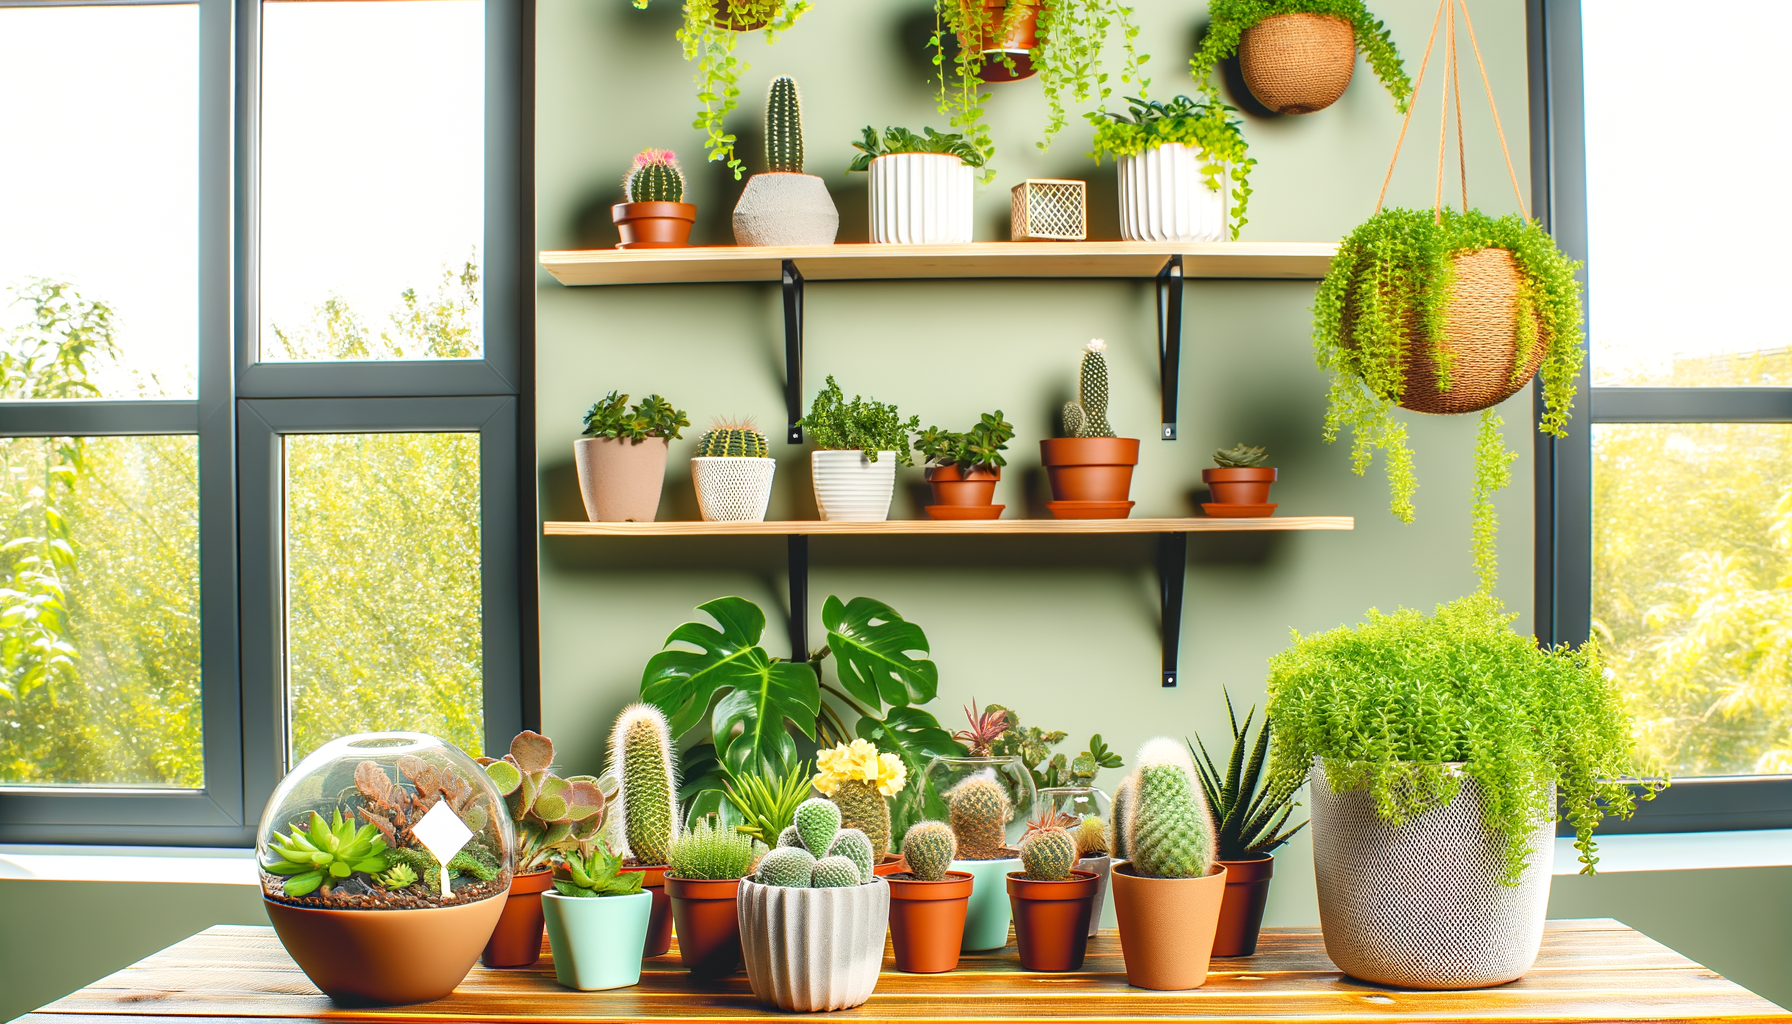 "Des plantes luxuriantes décorent un petit espace intérieur se transformant en un jardin d'intérieur innovant pour maximiser l'espace."